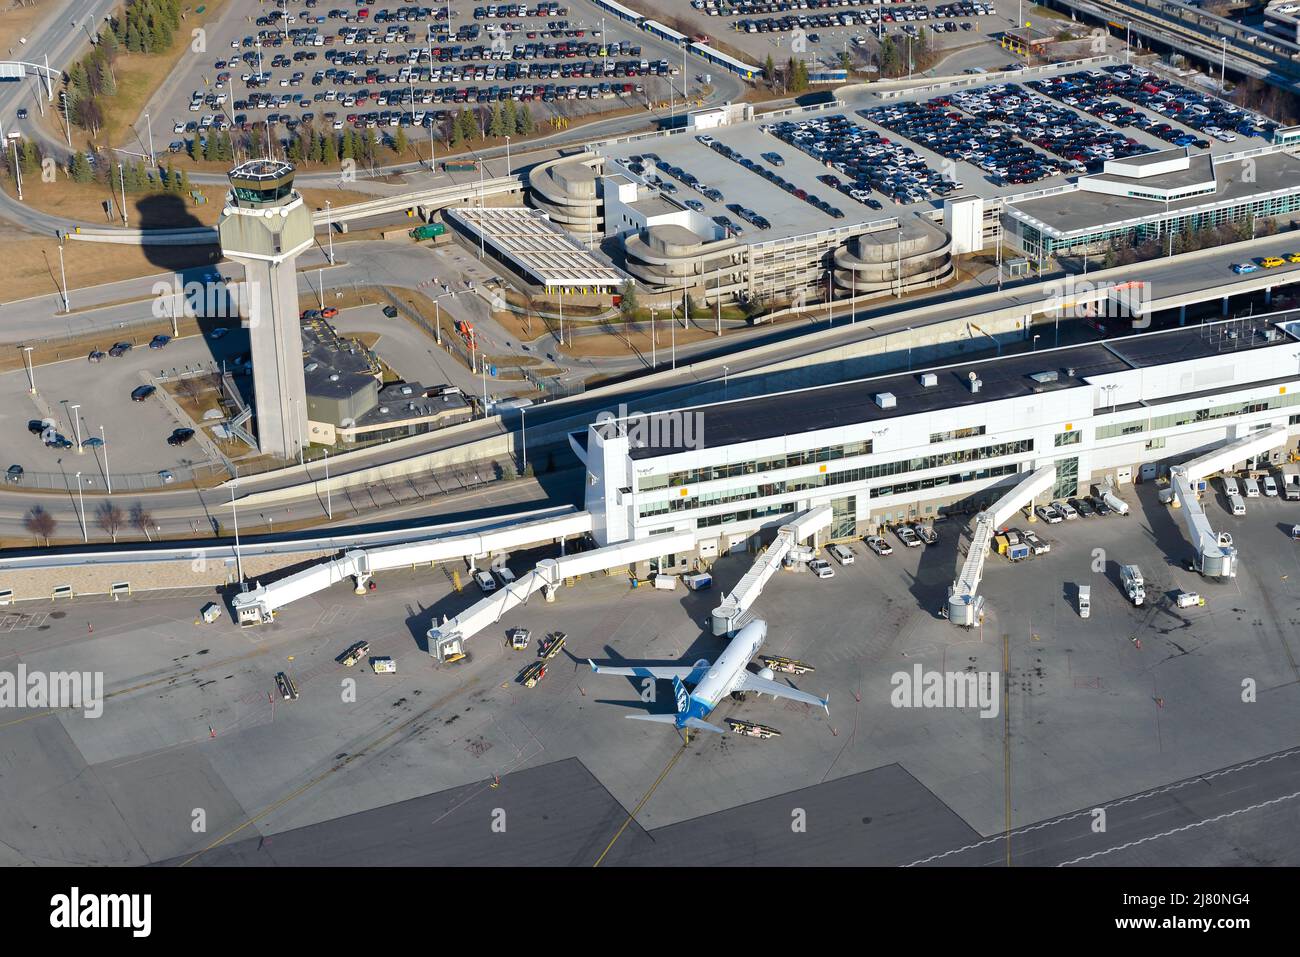 Ted Stevens Anchorage Airport Passagierterminal in Anchorage, Alaska. Luftaufnahme des Anchorage Airport Terminals mit Düsenbrücken. Stockfoto